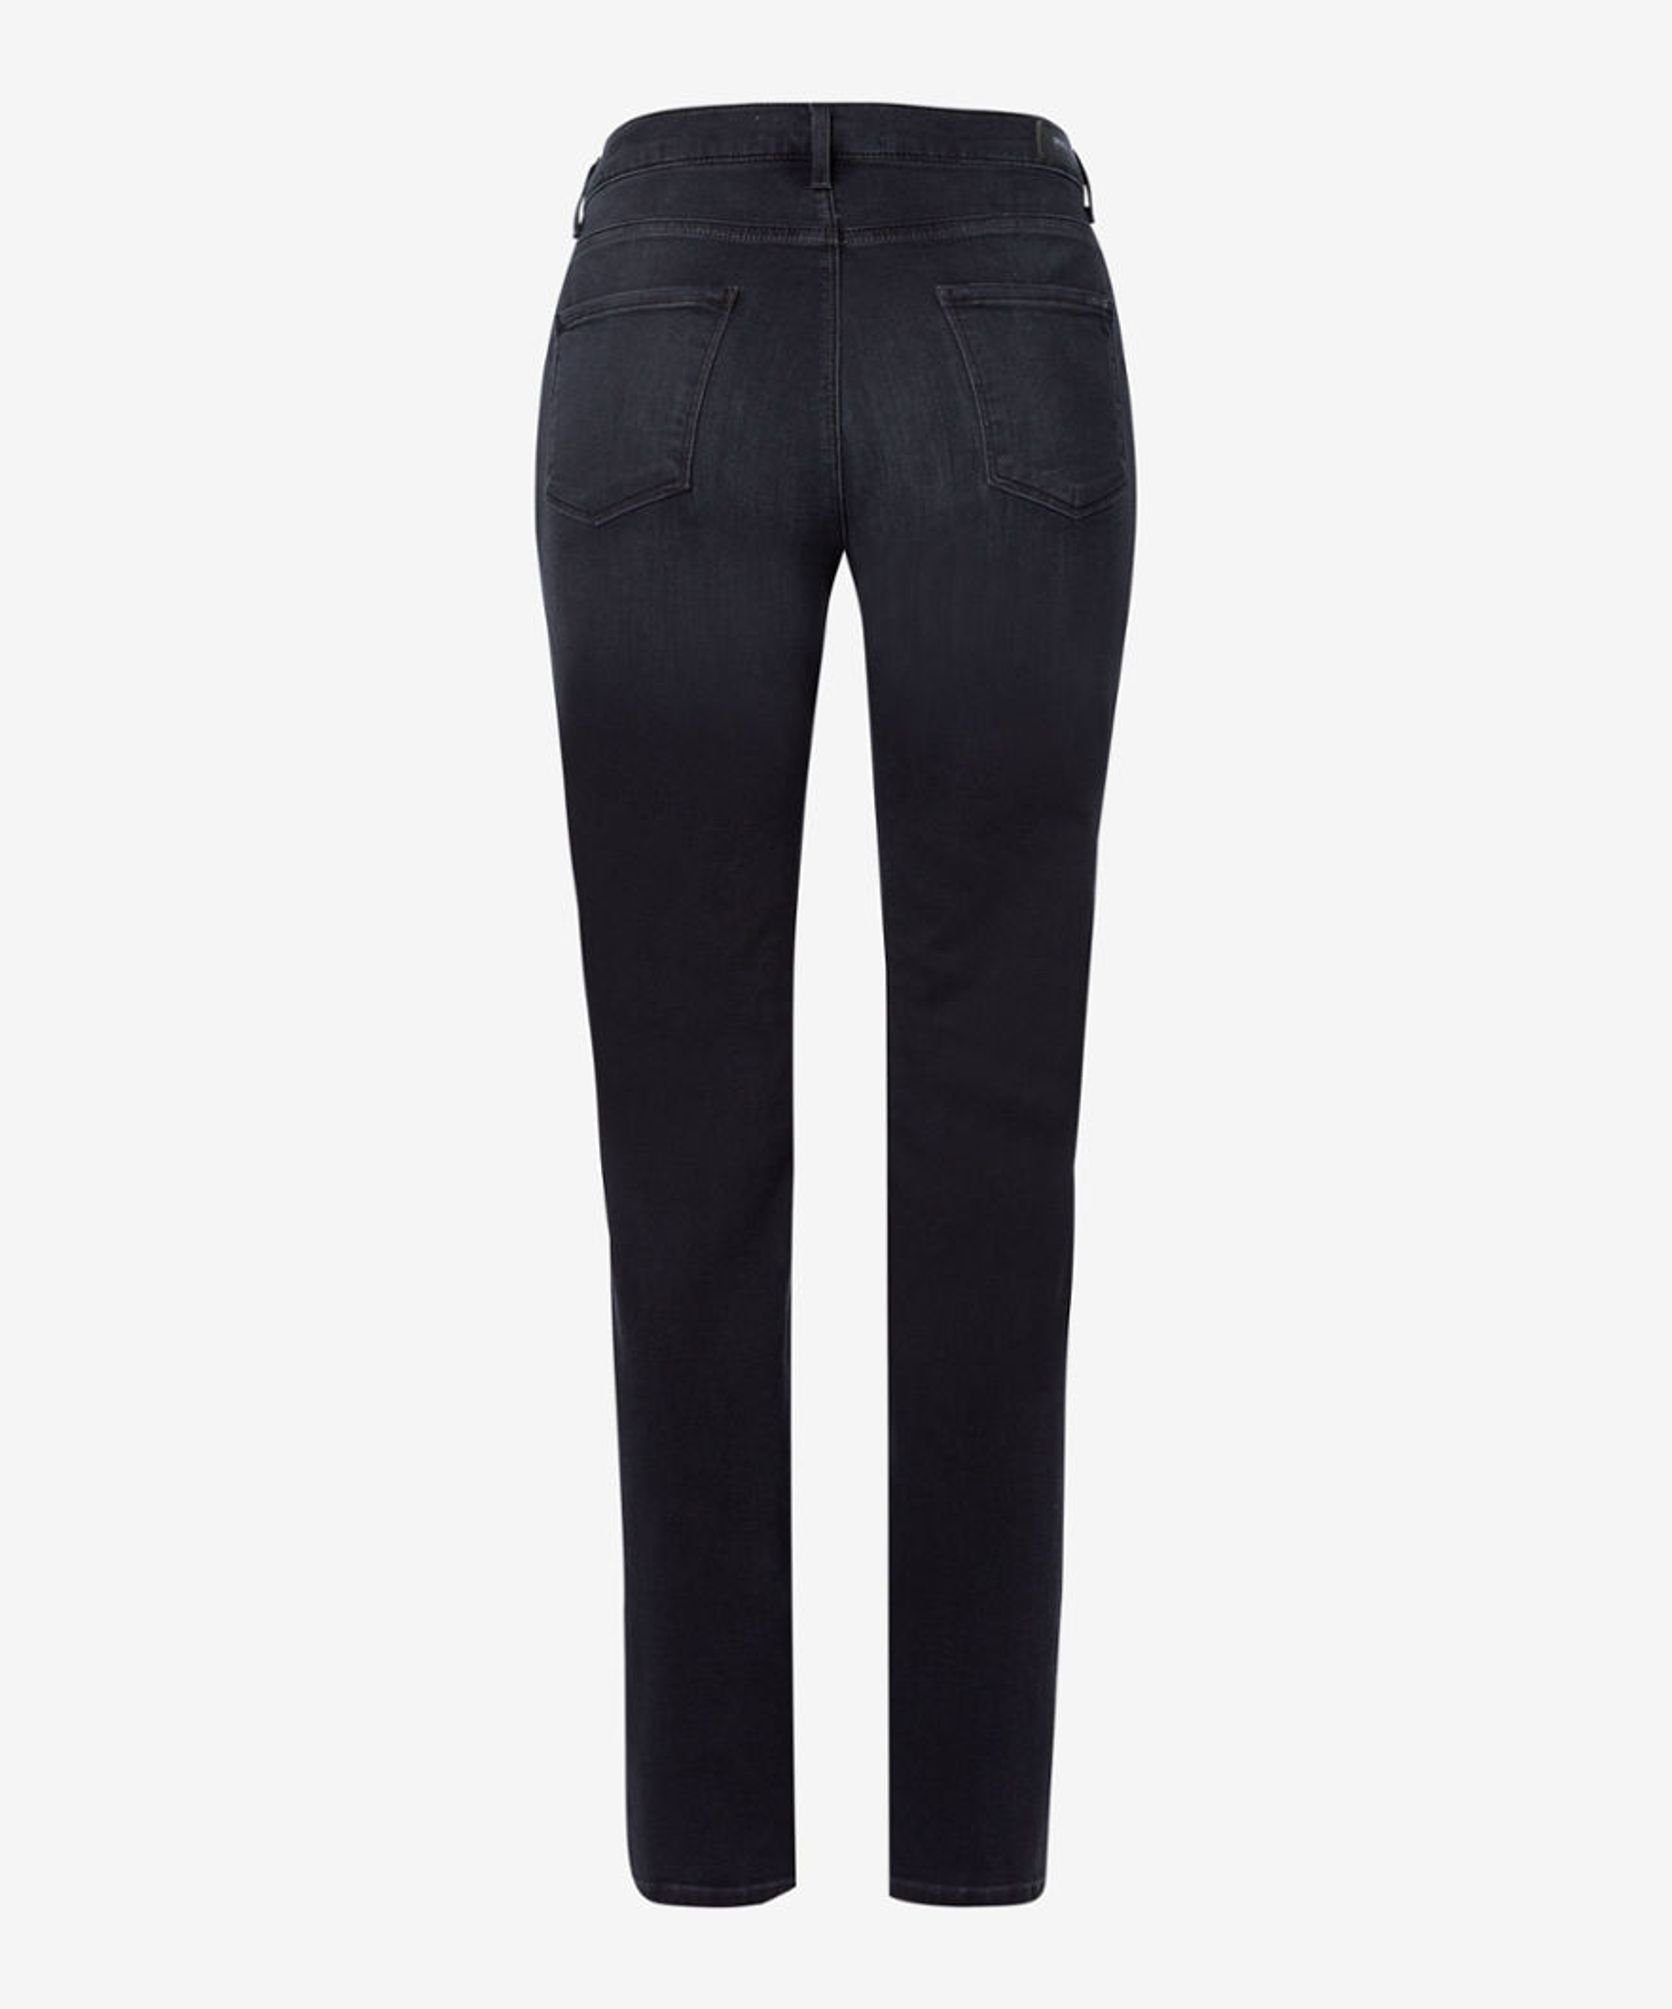 (03) Brax used 5-Pocket-Jeans black 70-4000